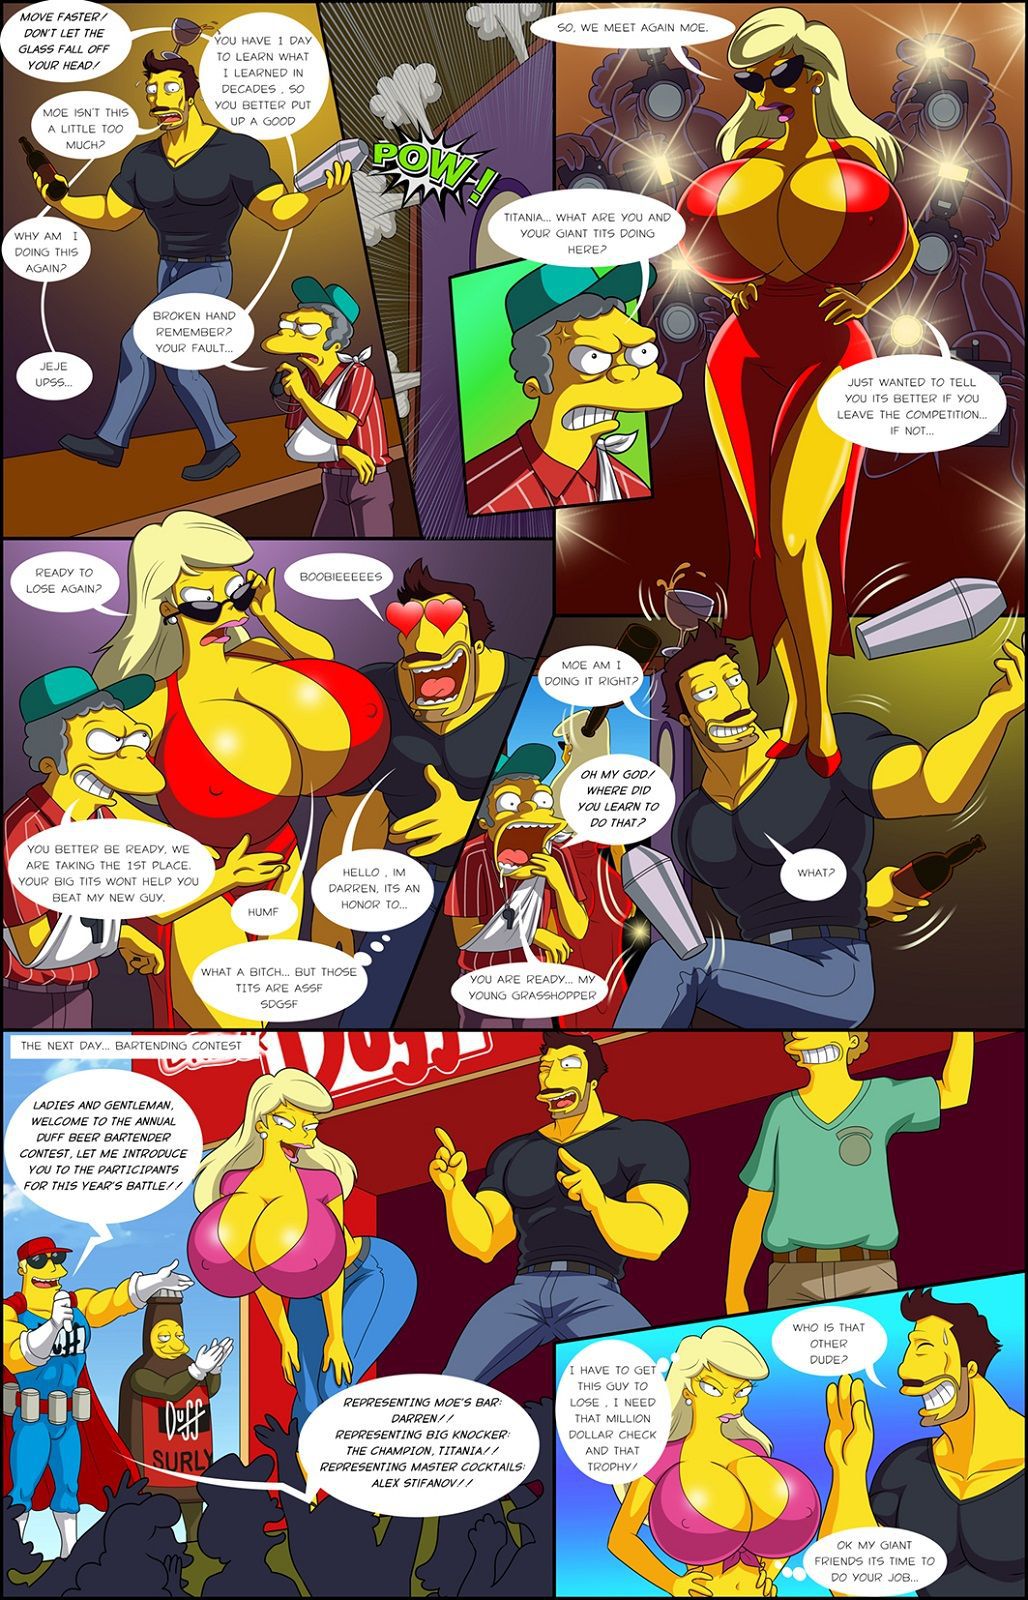 Darren's Adventure (The Simpsons) [Ongoing] 24